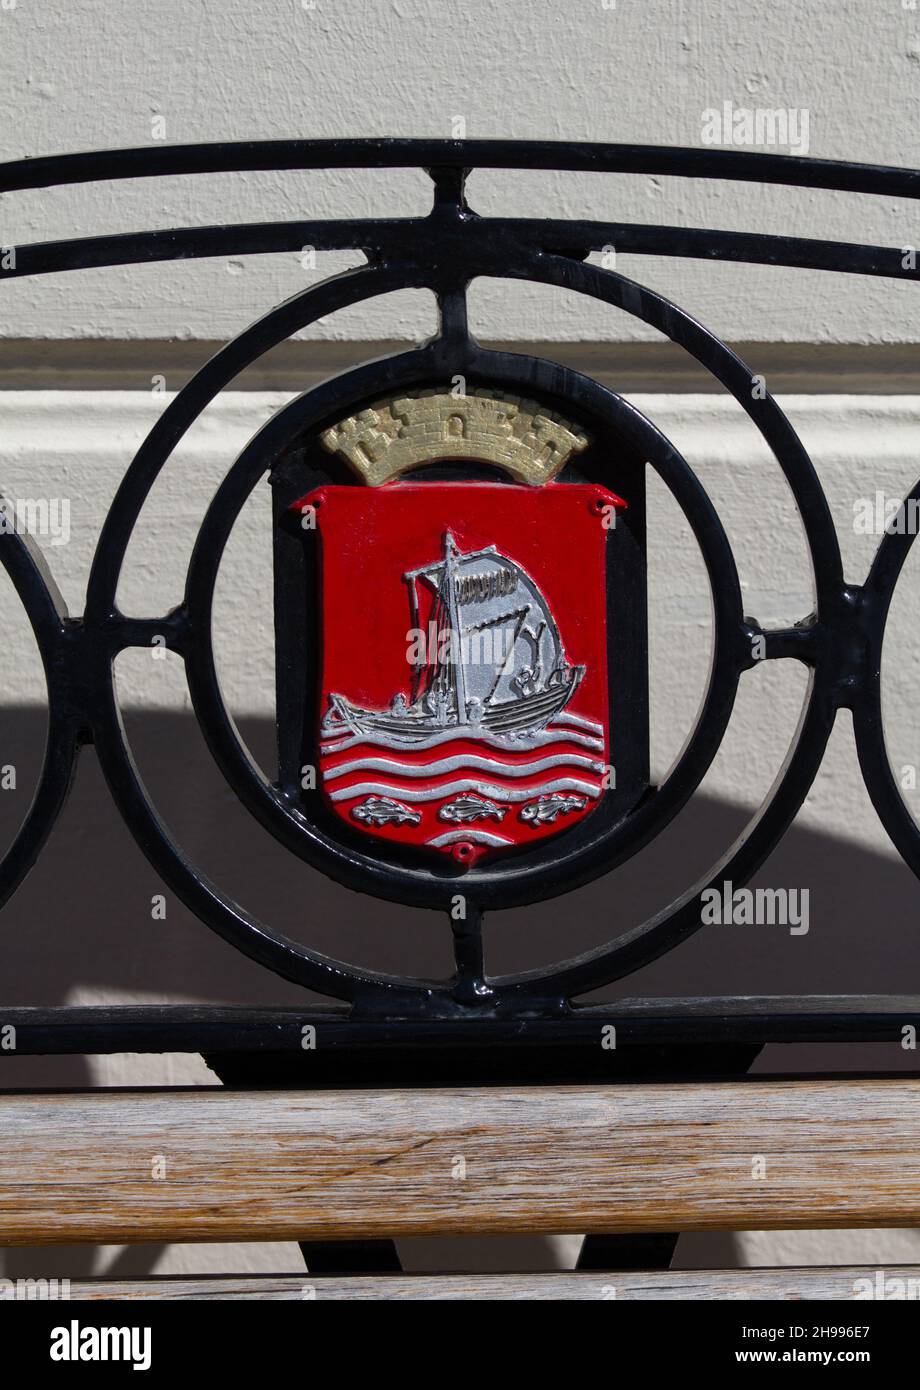 Armoiries de la ville d'Alesund, Norvège sur une plaque. La ville est réputée être liée à Rollo, fondateur de la dynastie des Ducs de Normandie Banque D'Images